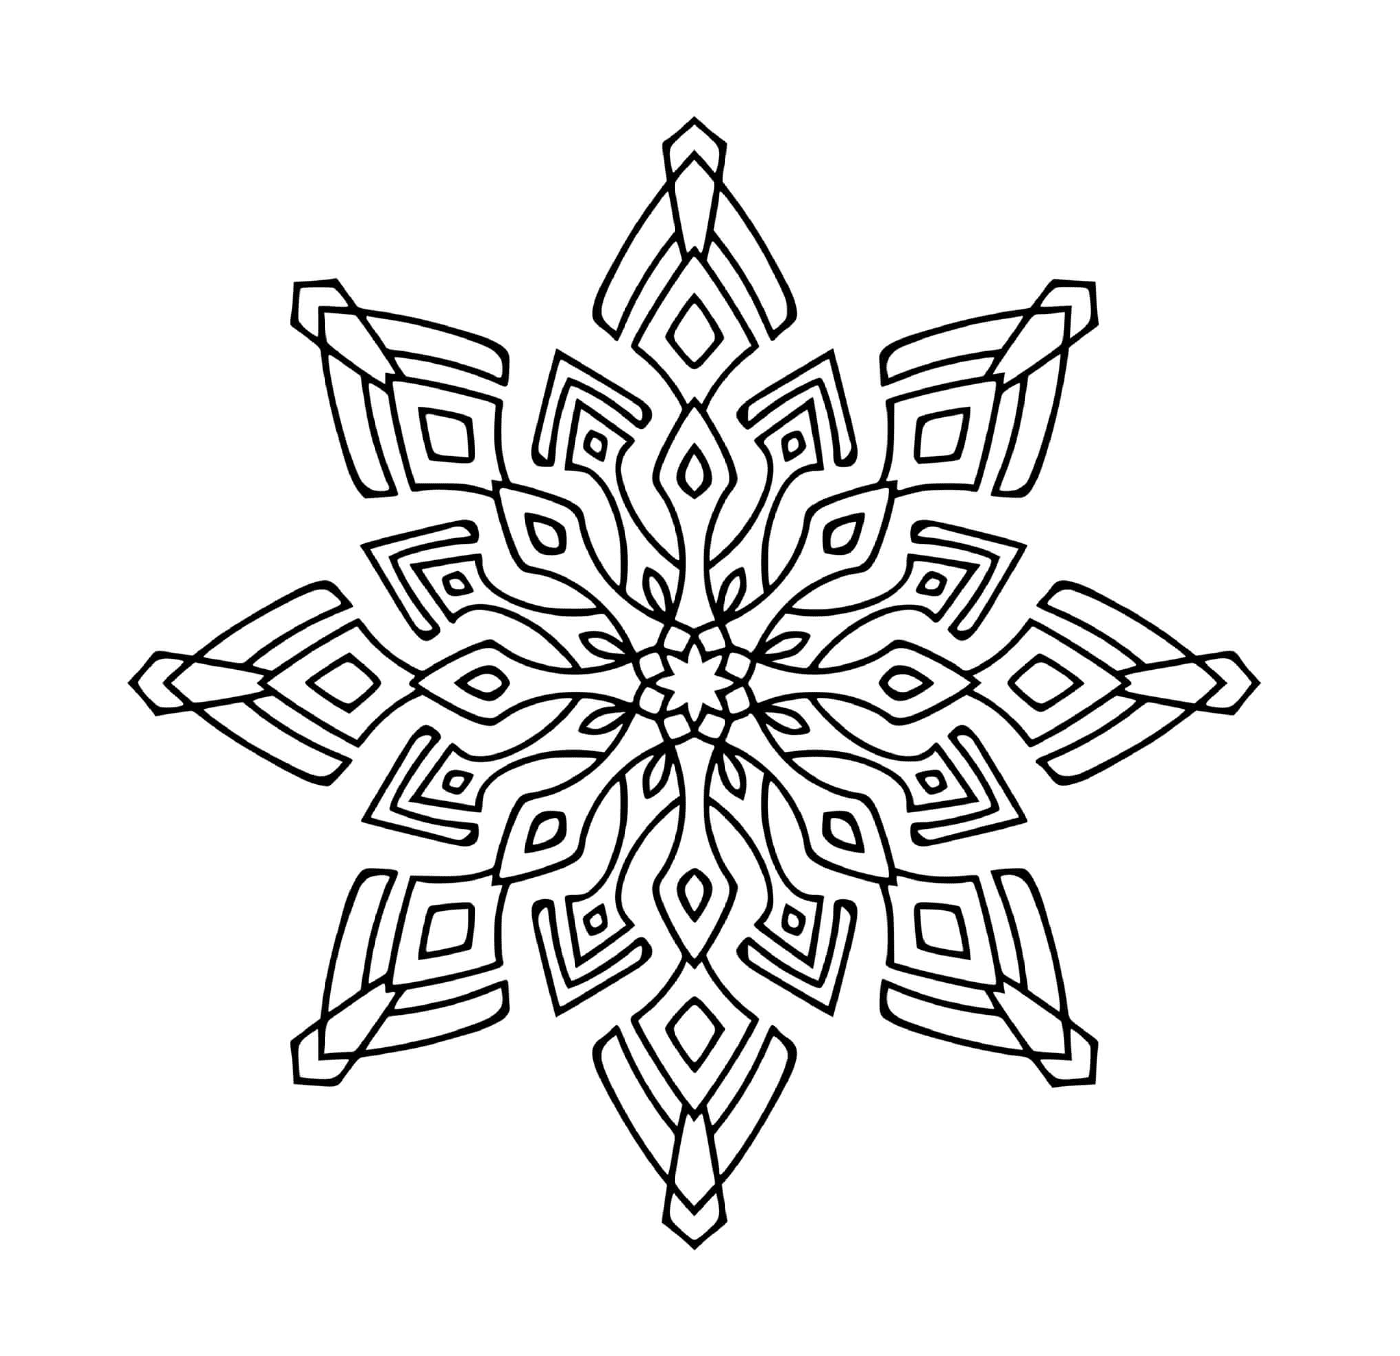   Un design de flocon de neige moderne en mandala 